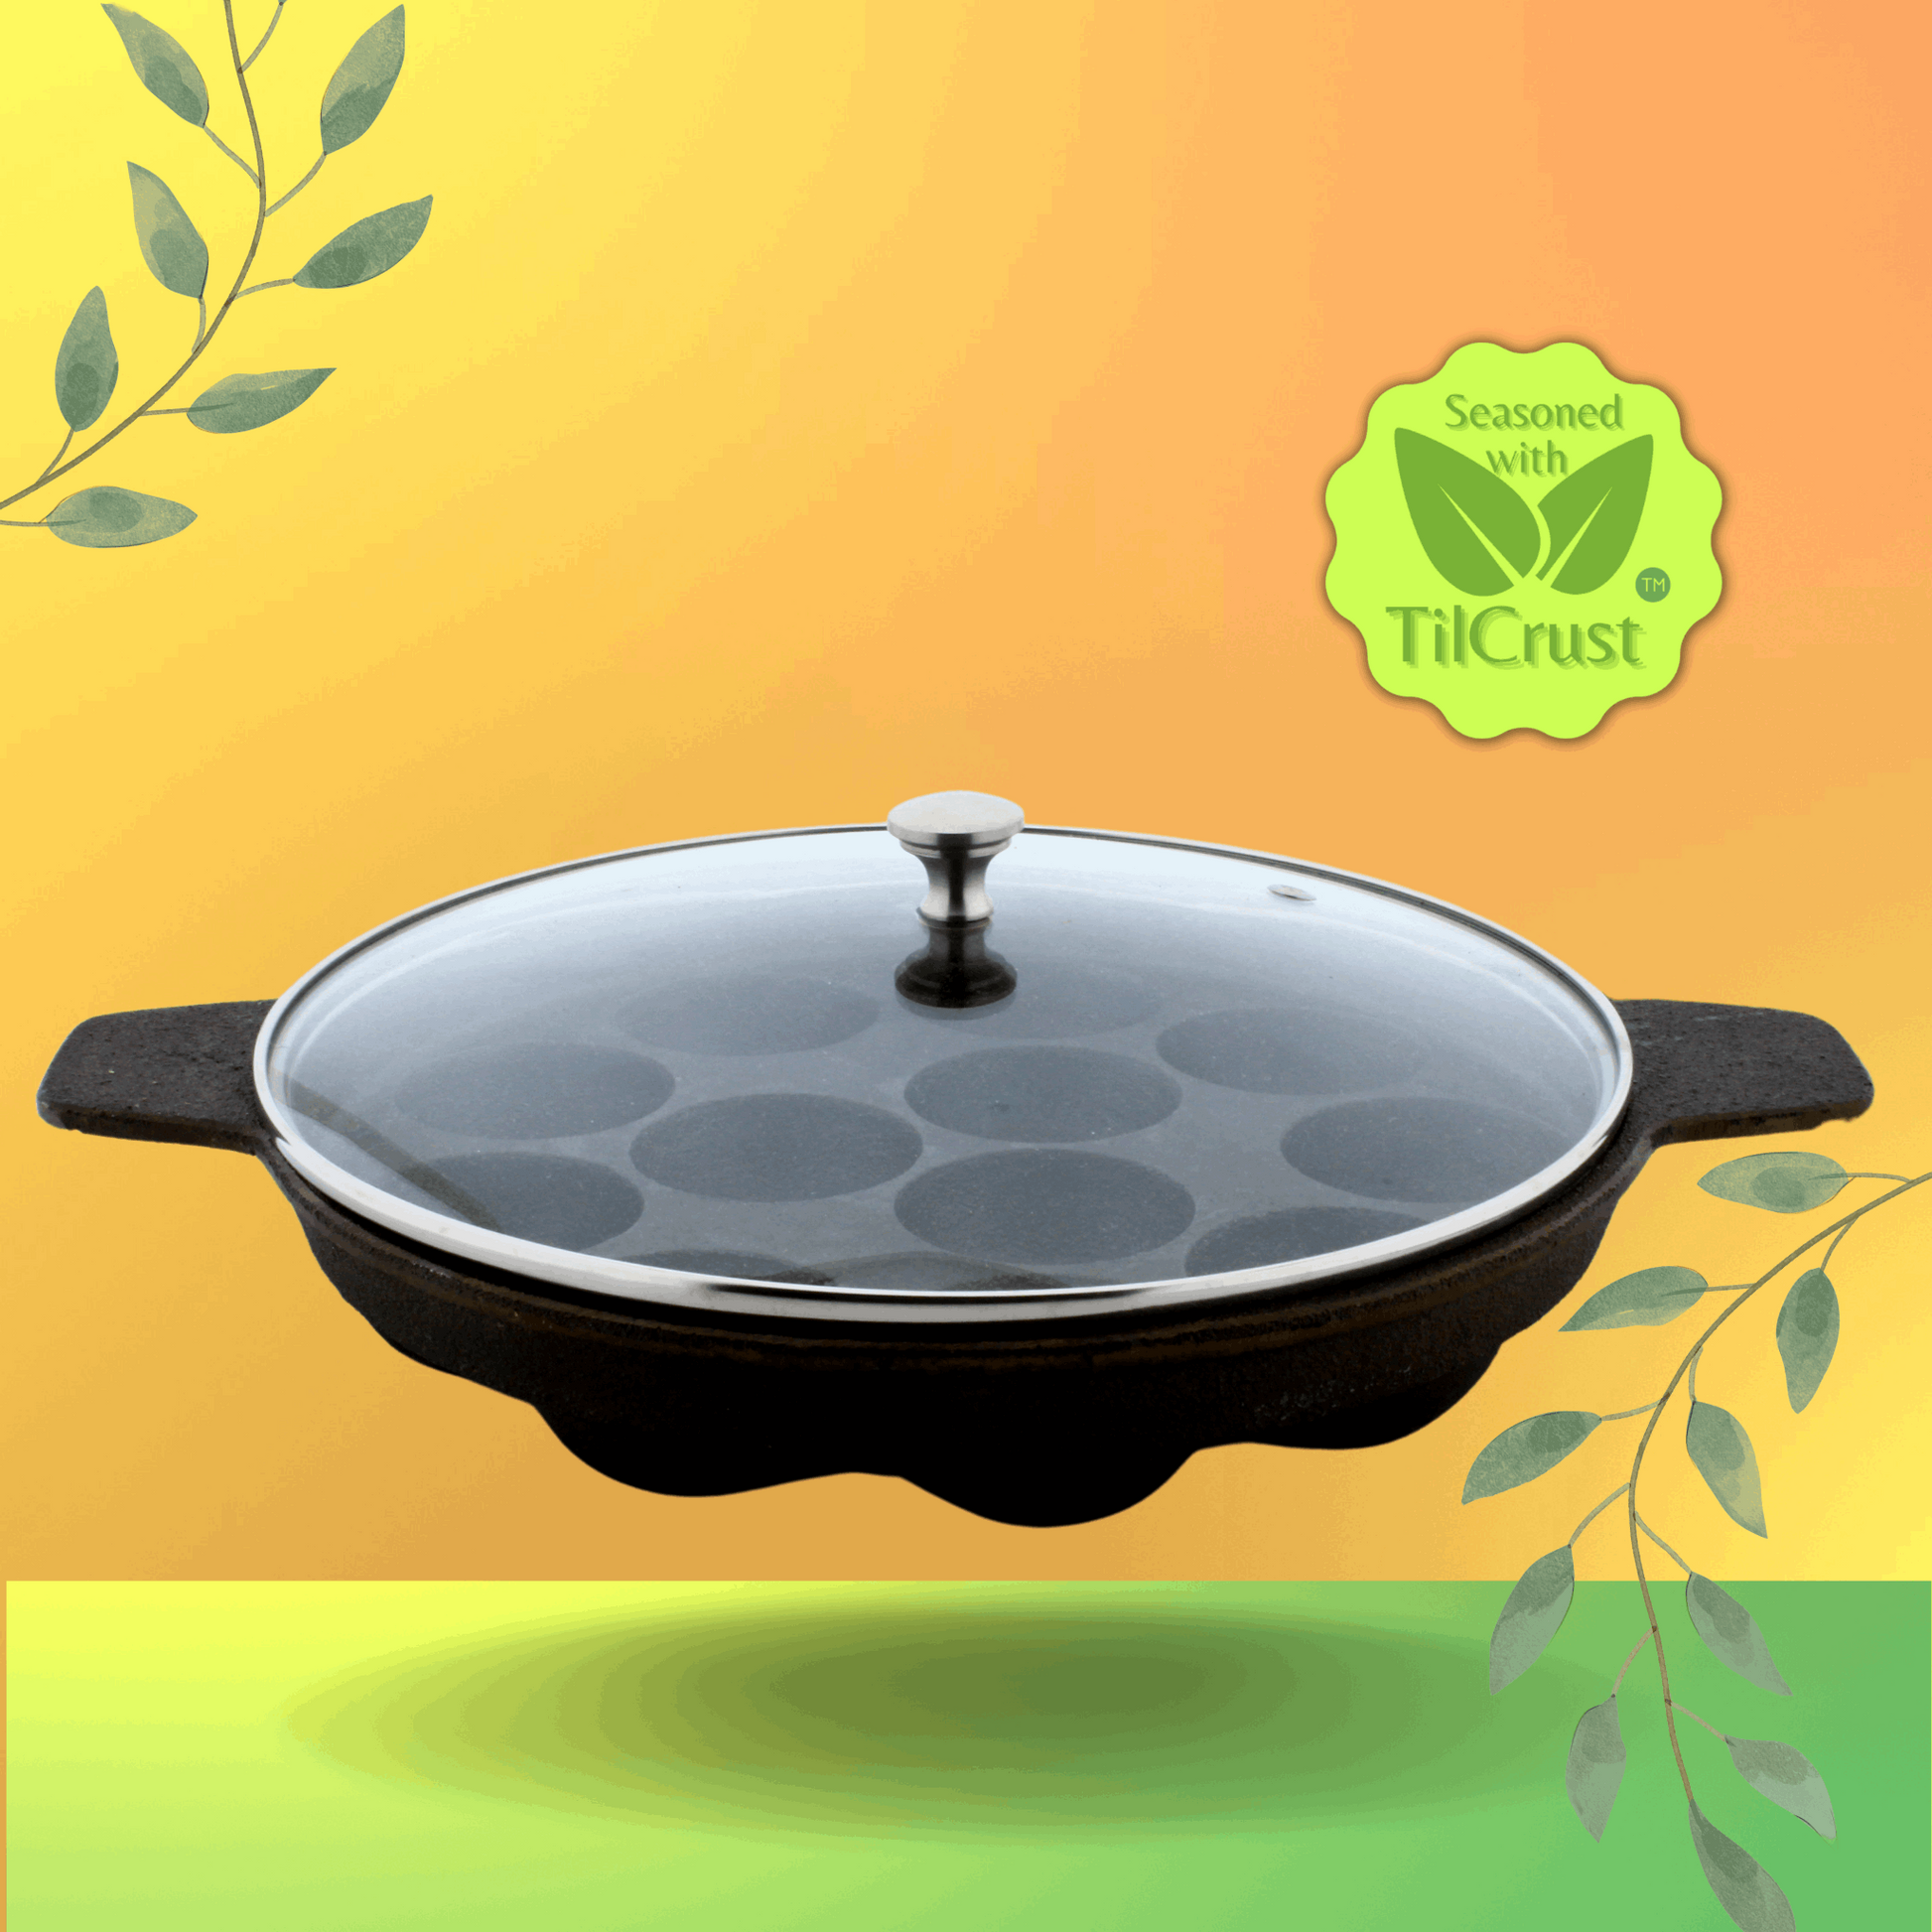 Cast Iron Paniyaram Pan, Appe Pan, Toxic-Free